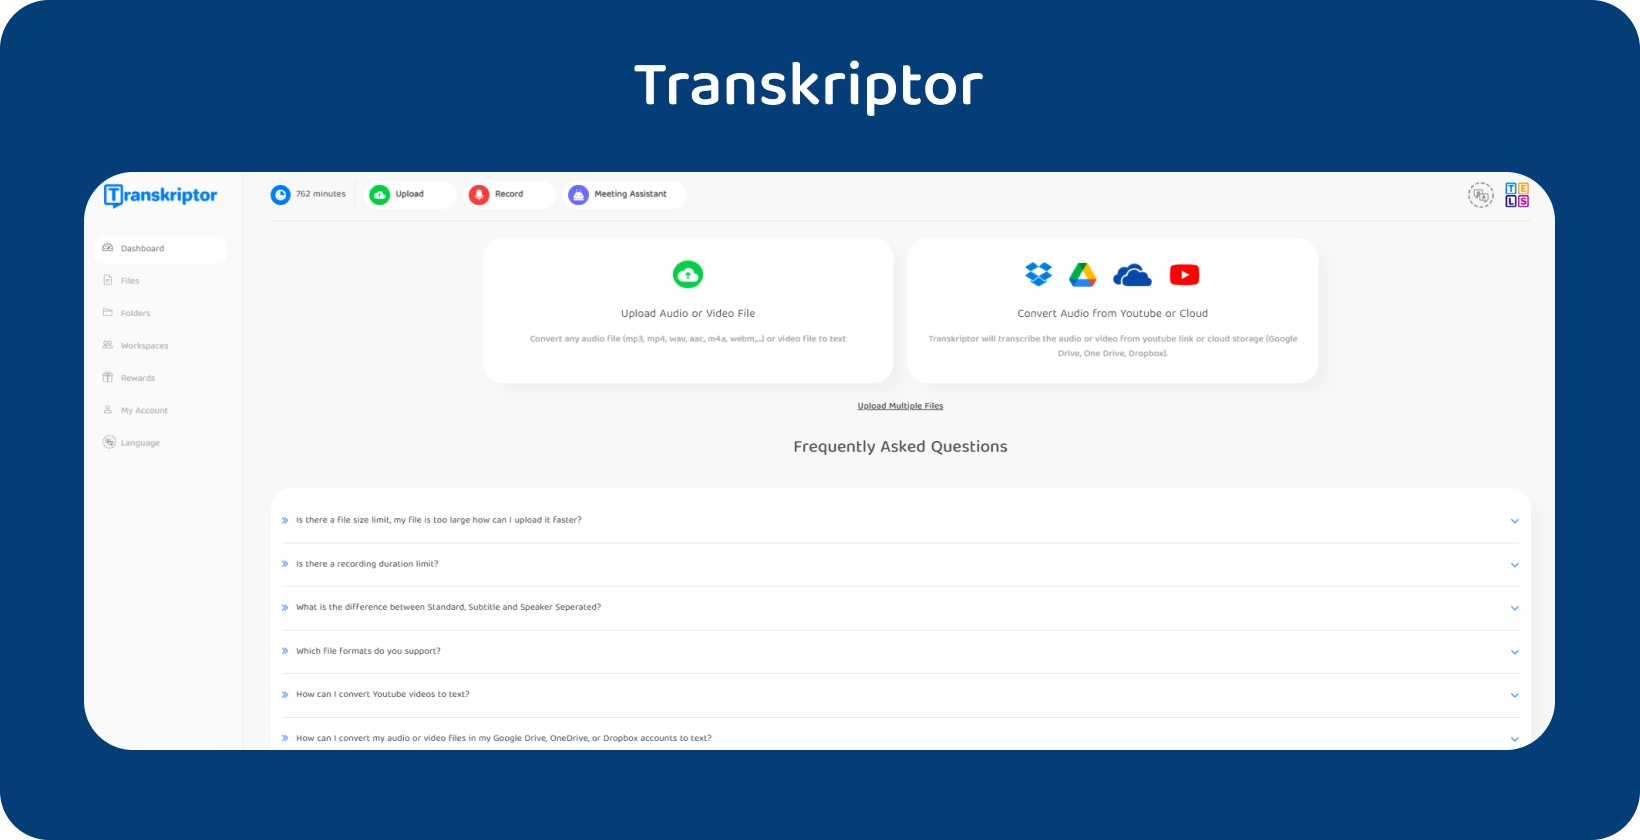 Interface do Transkriptor promovendo seu serviço de conversão de áudio para texto.